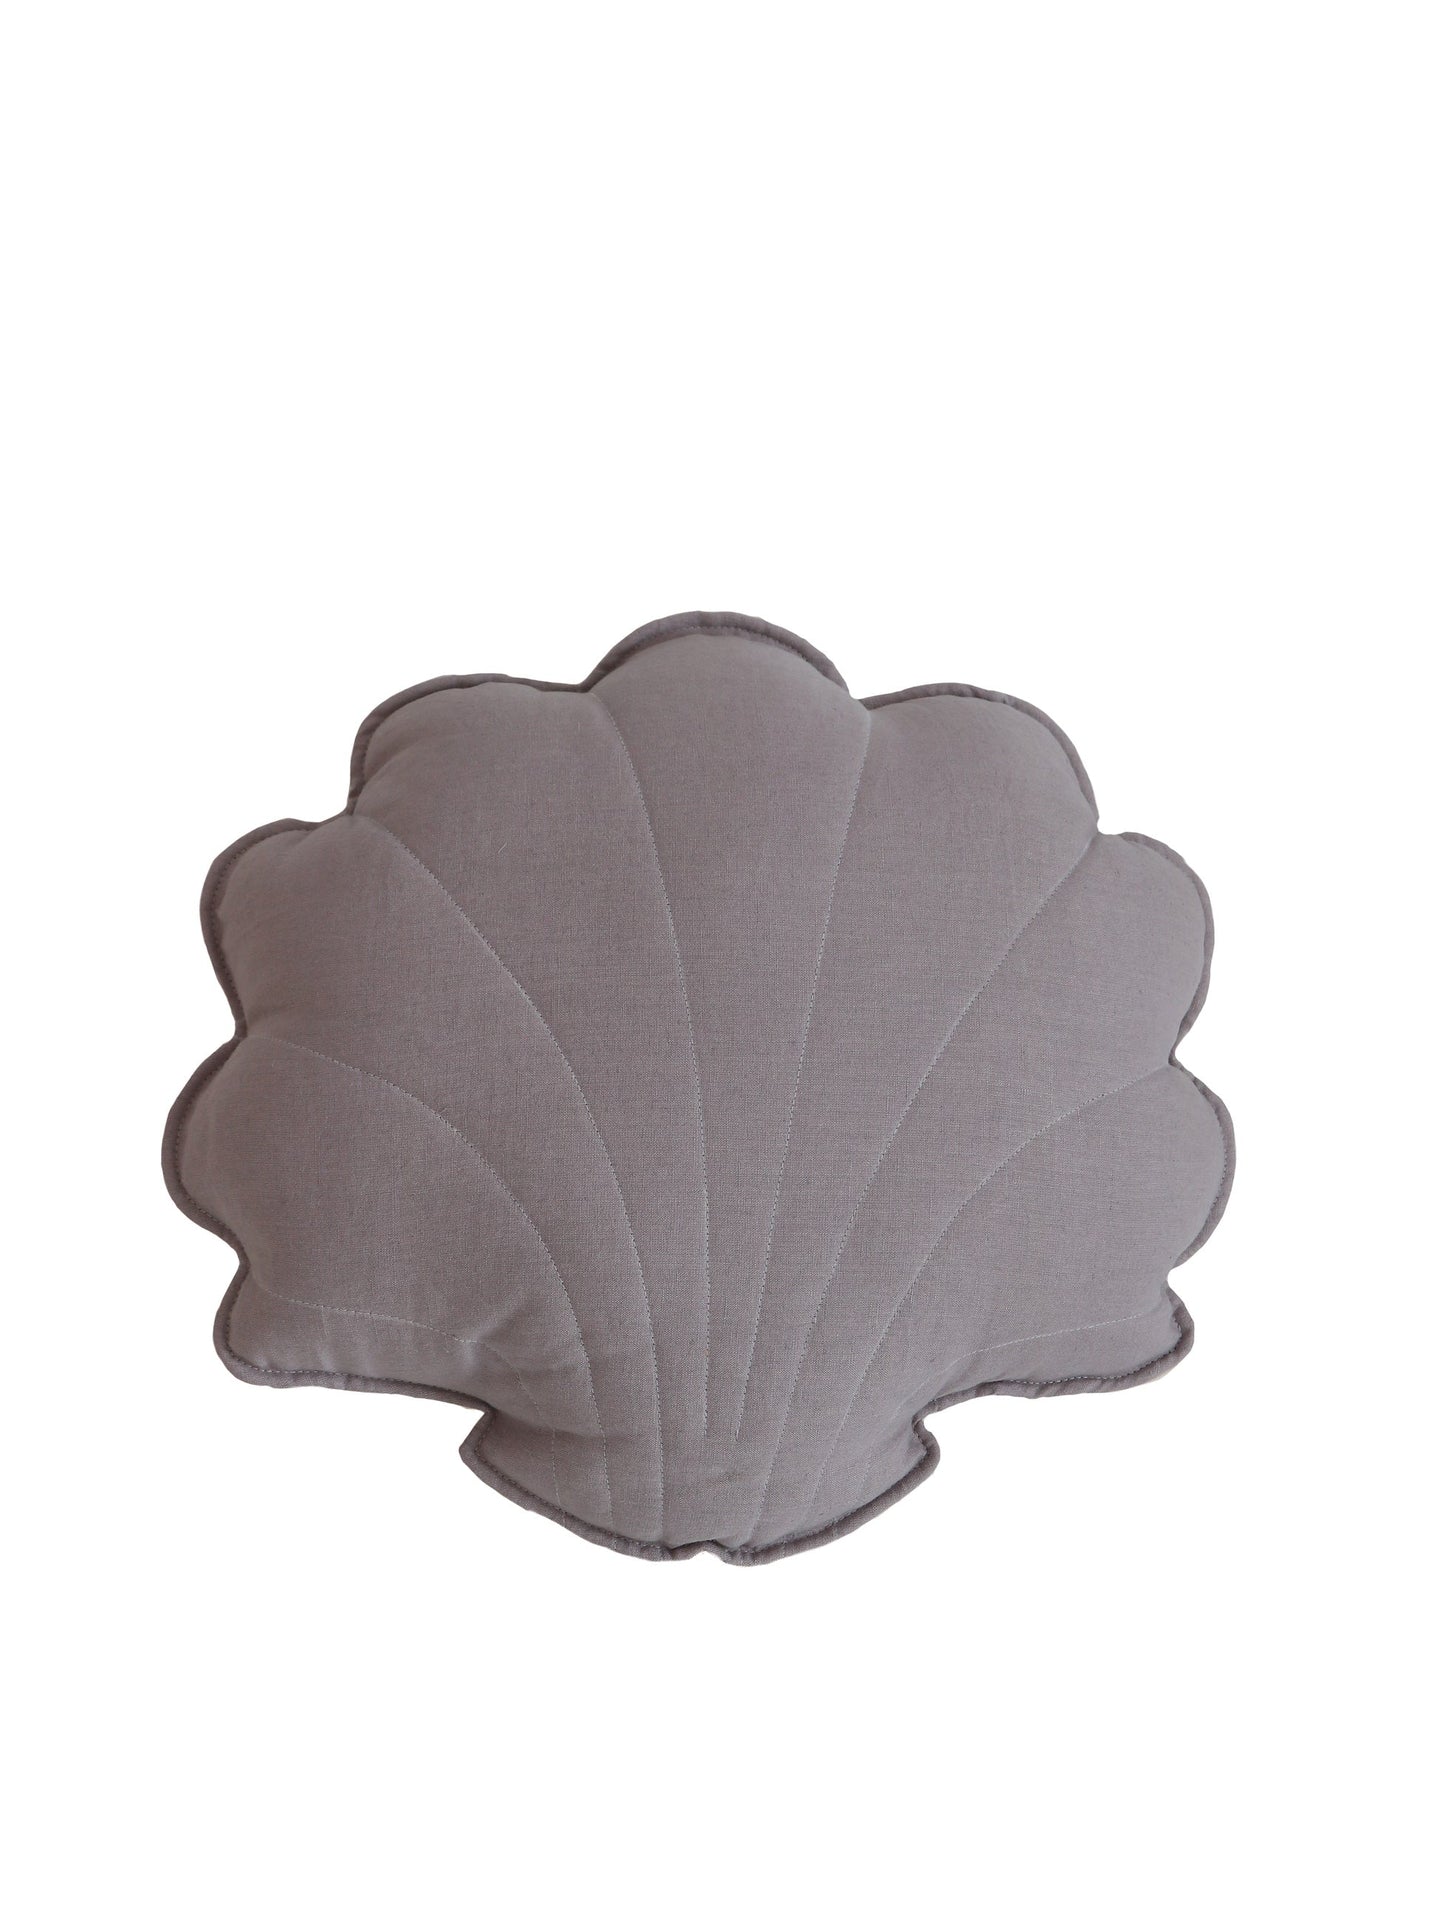 Linen “Gray” Shell Pillow